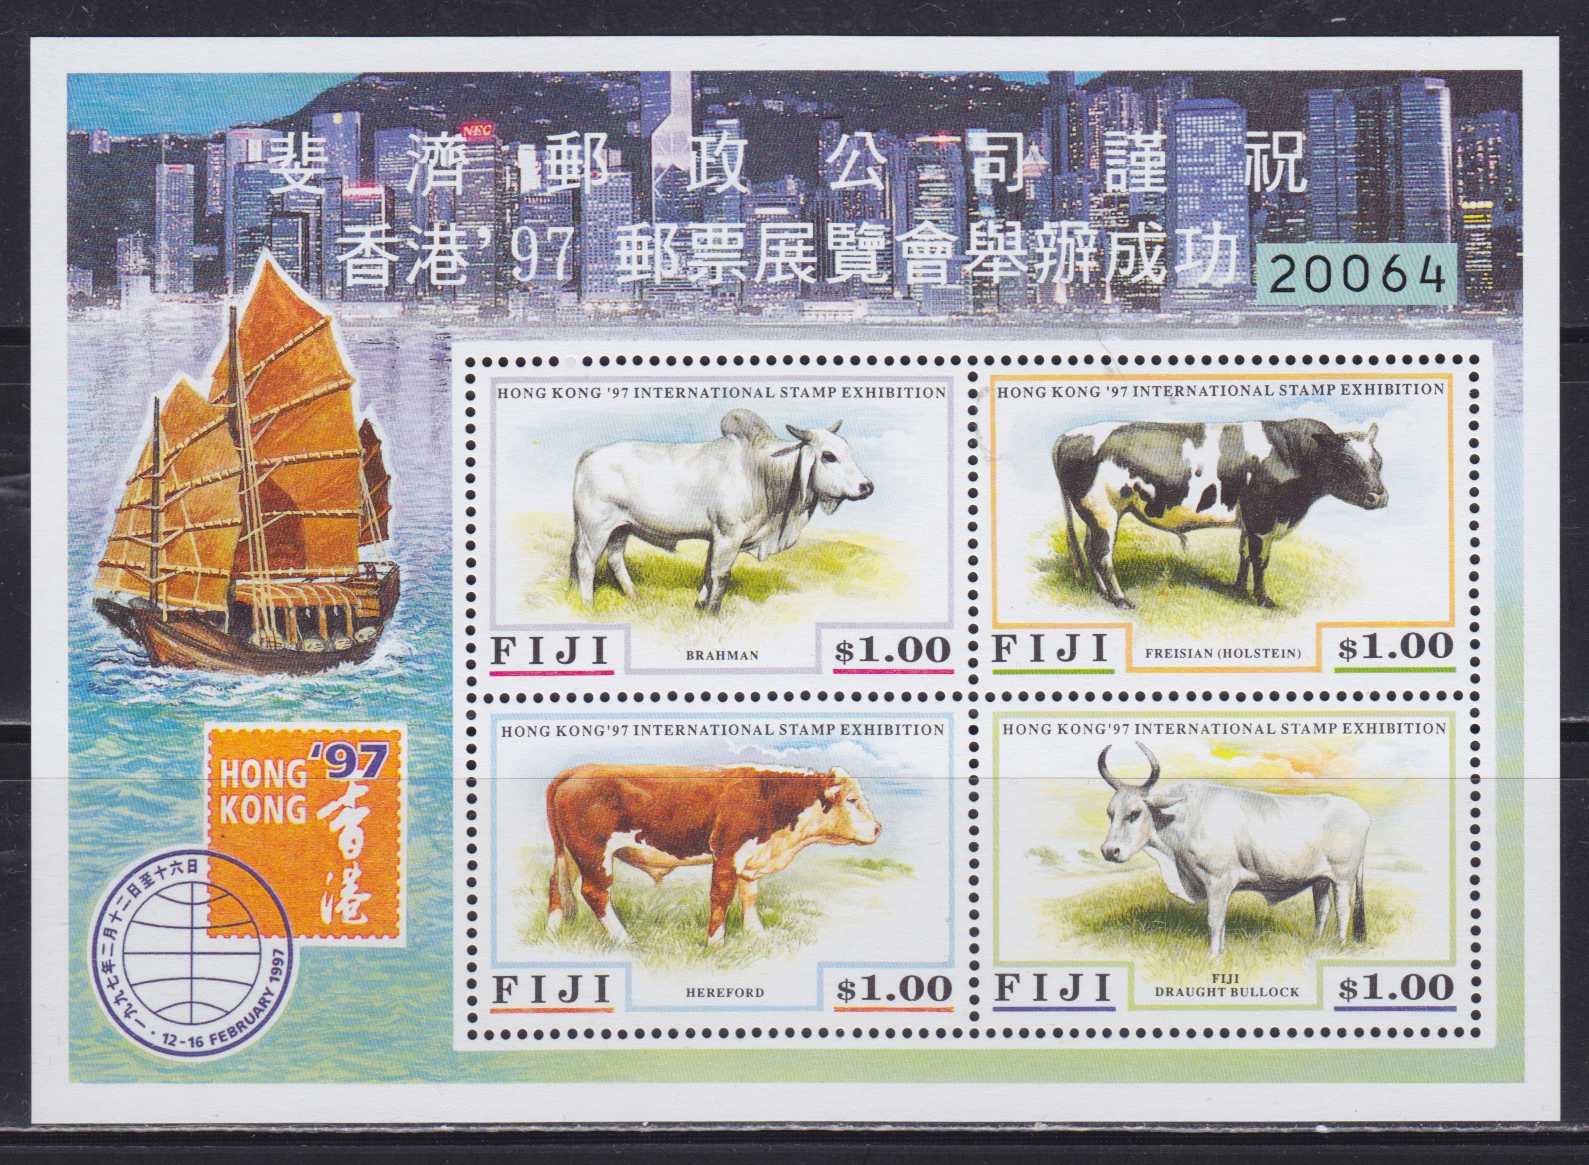 Каталог stampworld. Почтовые марки Фиджи. Почтовые марки Hong Kong фауна. Корова на почтовой марке. Почтовые марки Гонконг по годам.